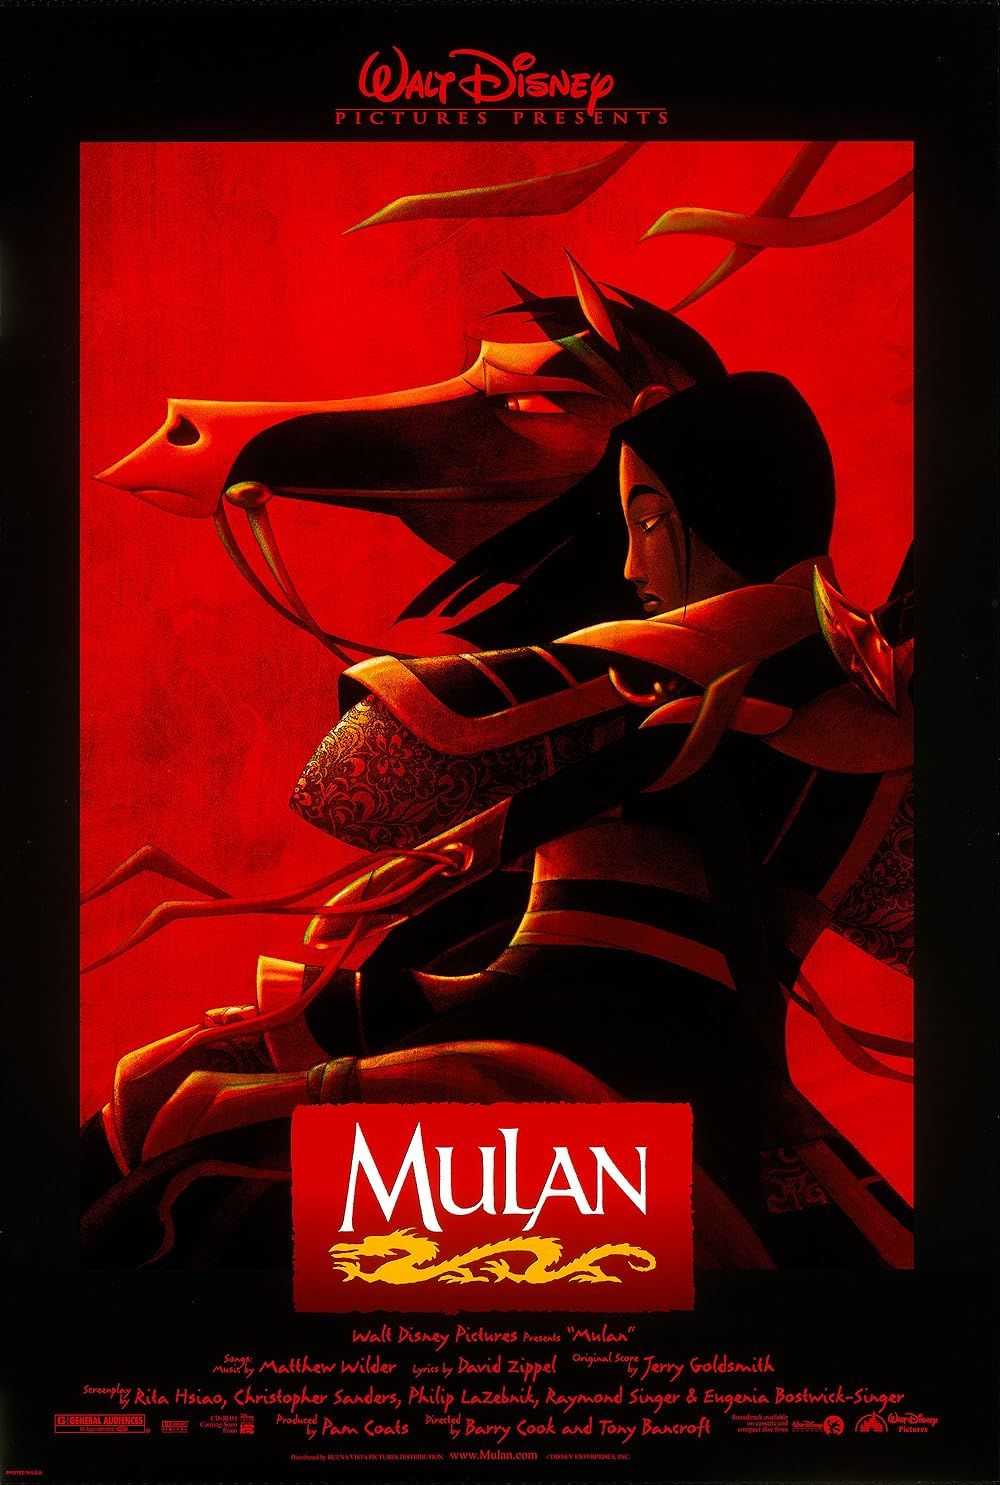 Mulan on the Mulan poster